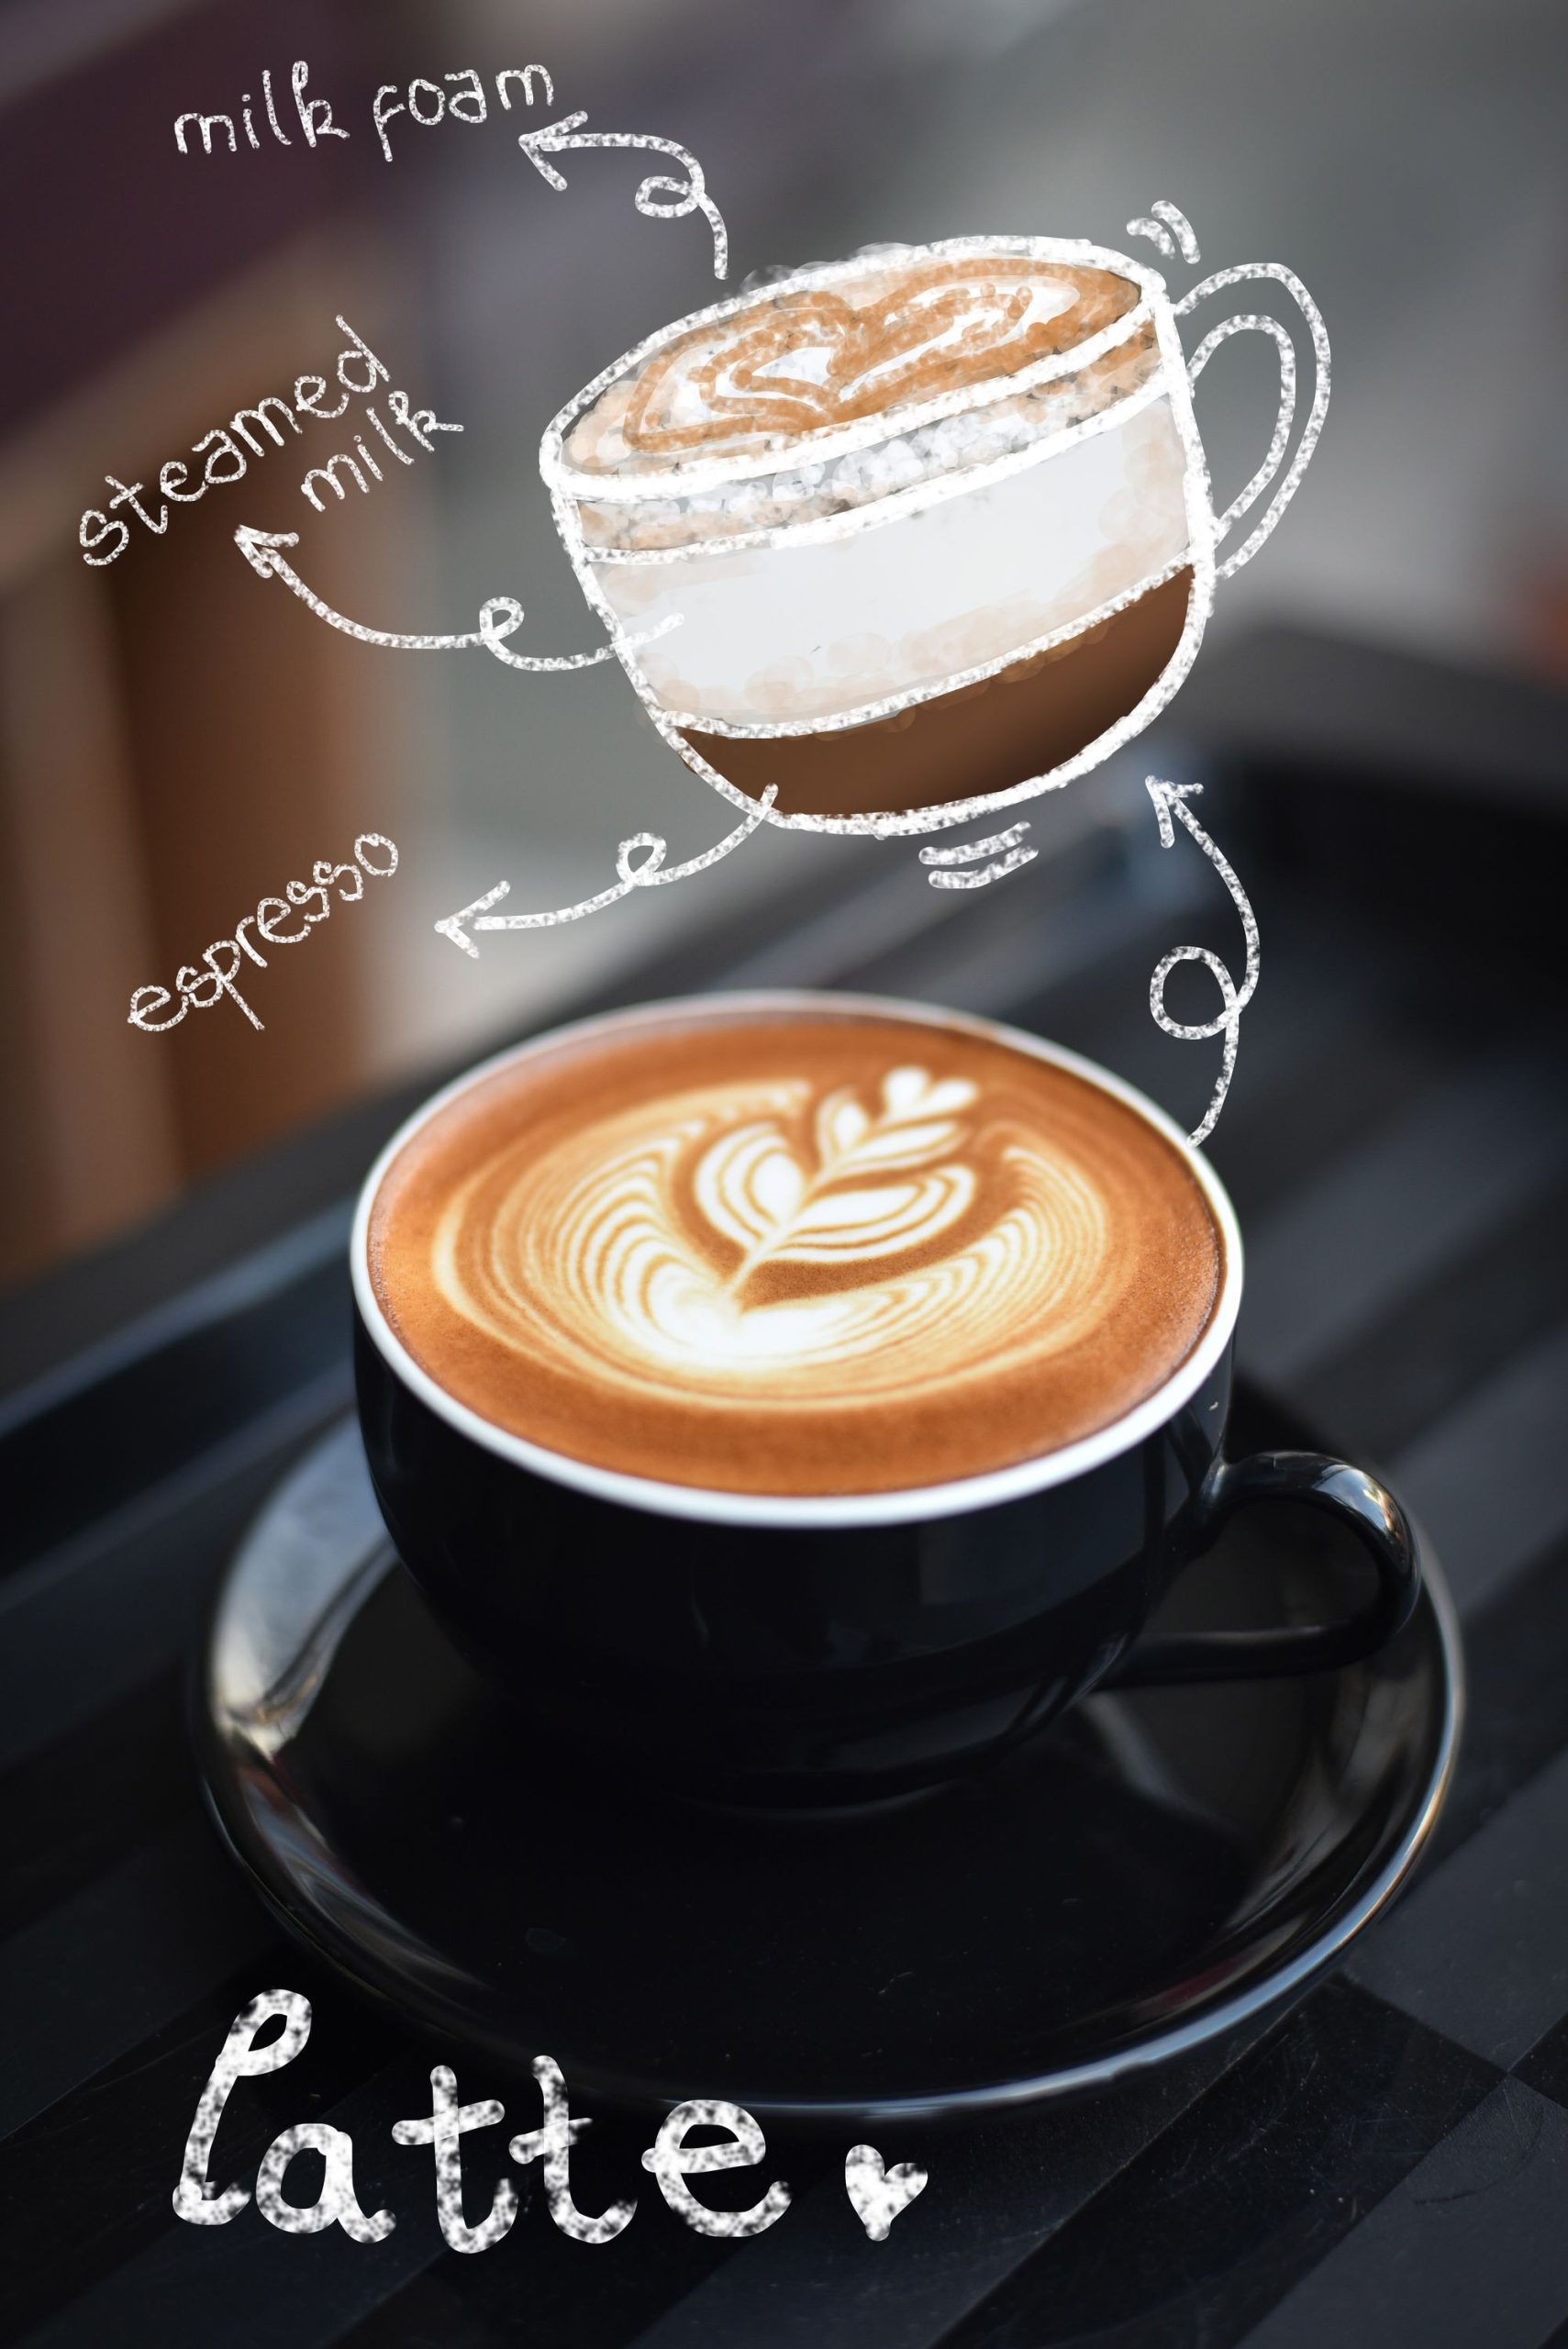 Latte bao gồm Espresso, milk foam và steamed milk